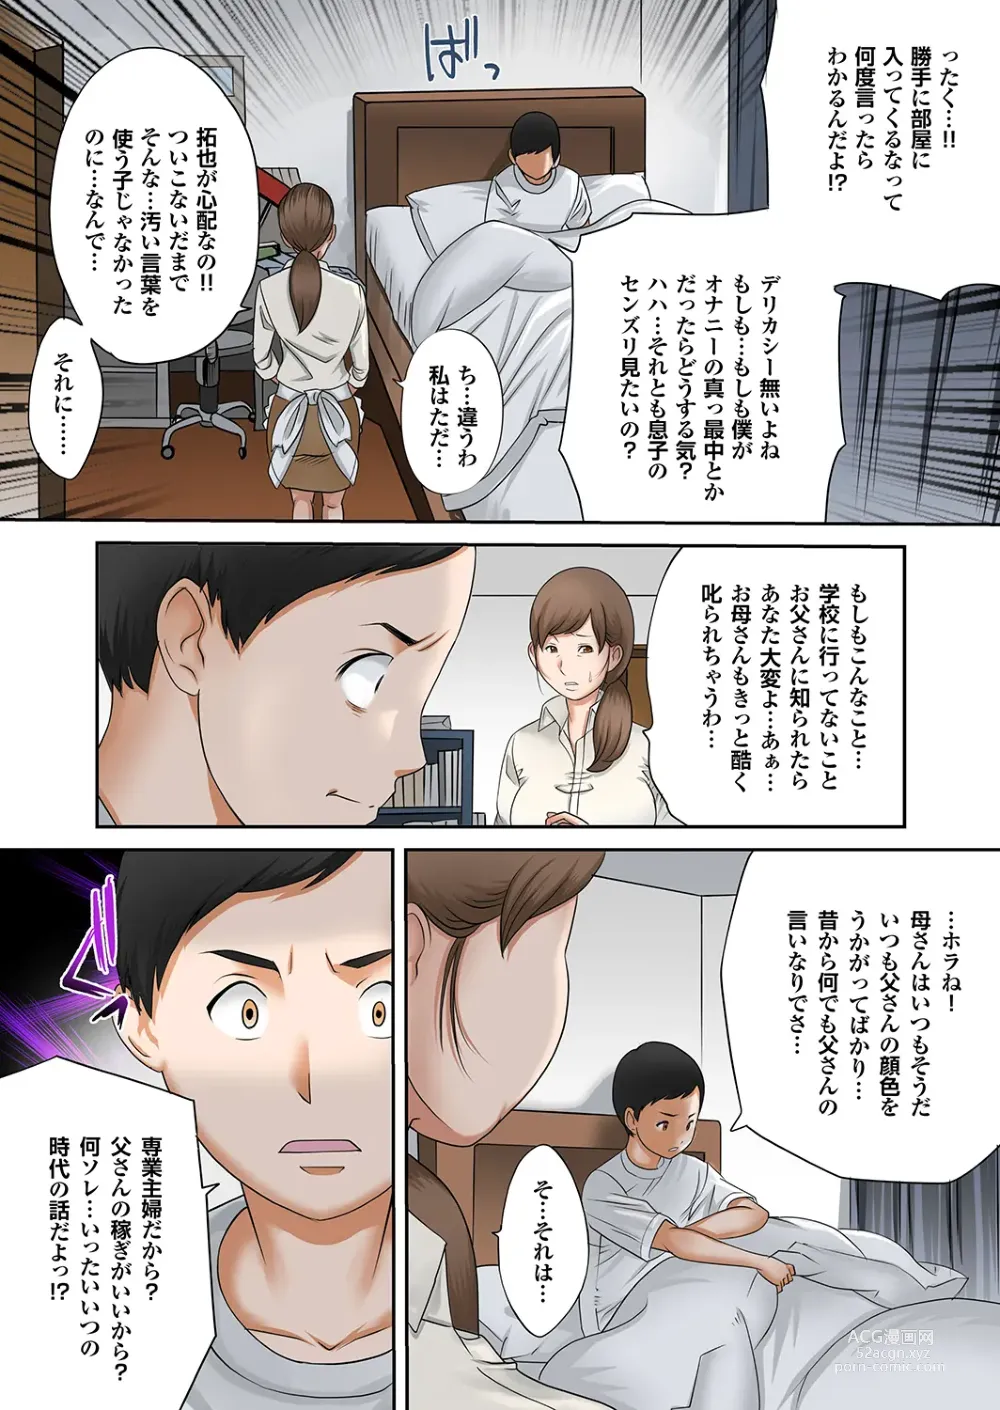 Page 7 of manga Boku no Kaa-san no Nikudorei-ka ga Tomaranai.